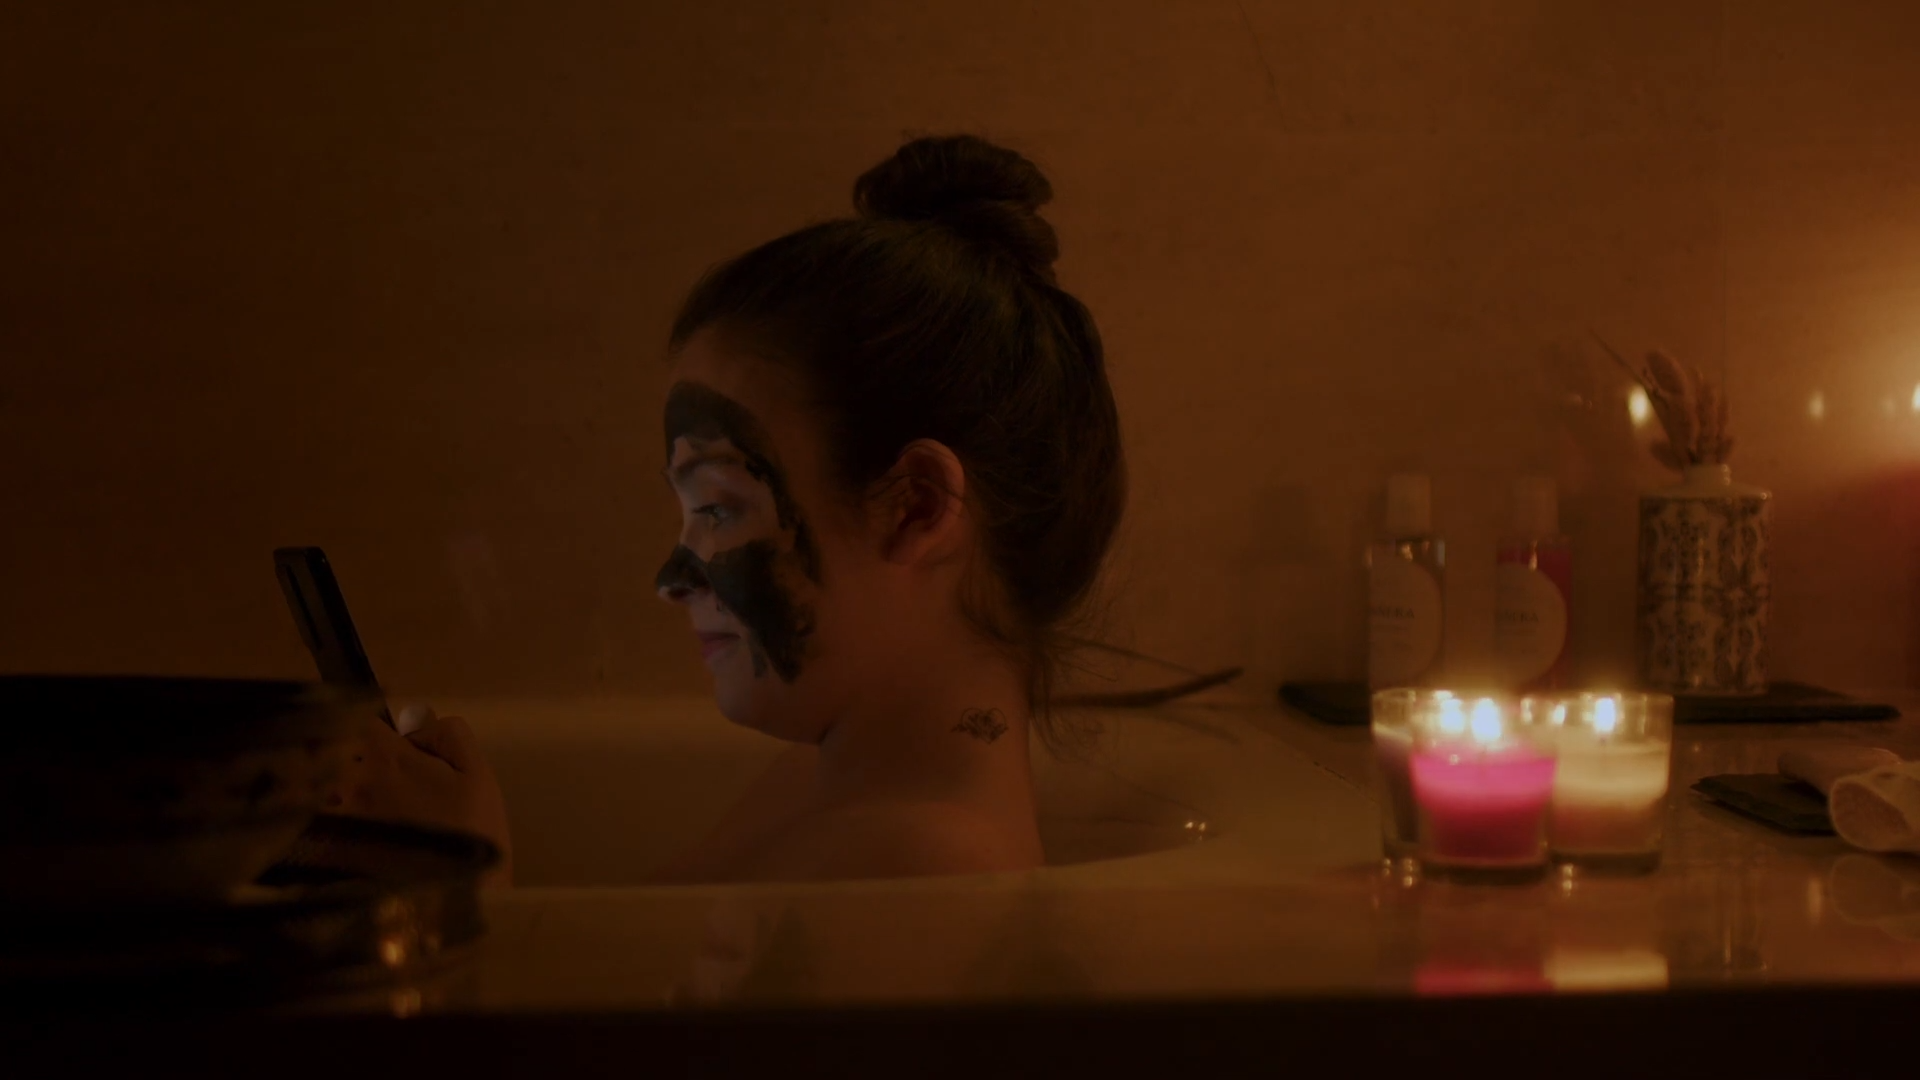 Mujer joven con una mascarilla facial relajándose en la bañera a la luz de las velas, reflejando un momento de calma y autocuidado en 'Siempre me acabo encontrando a mi misma en la bañera'.